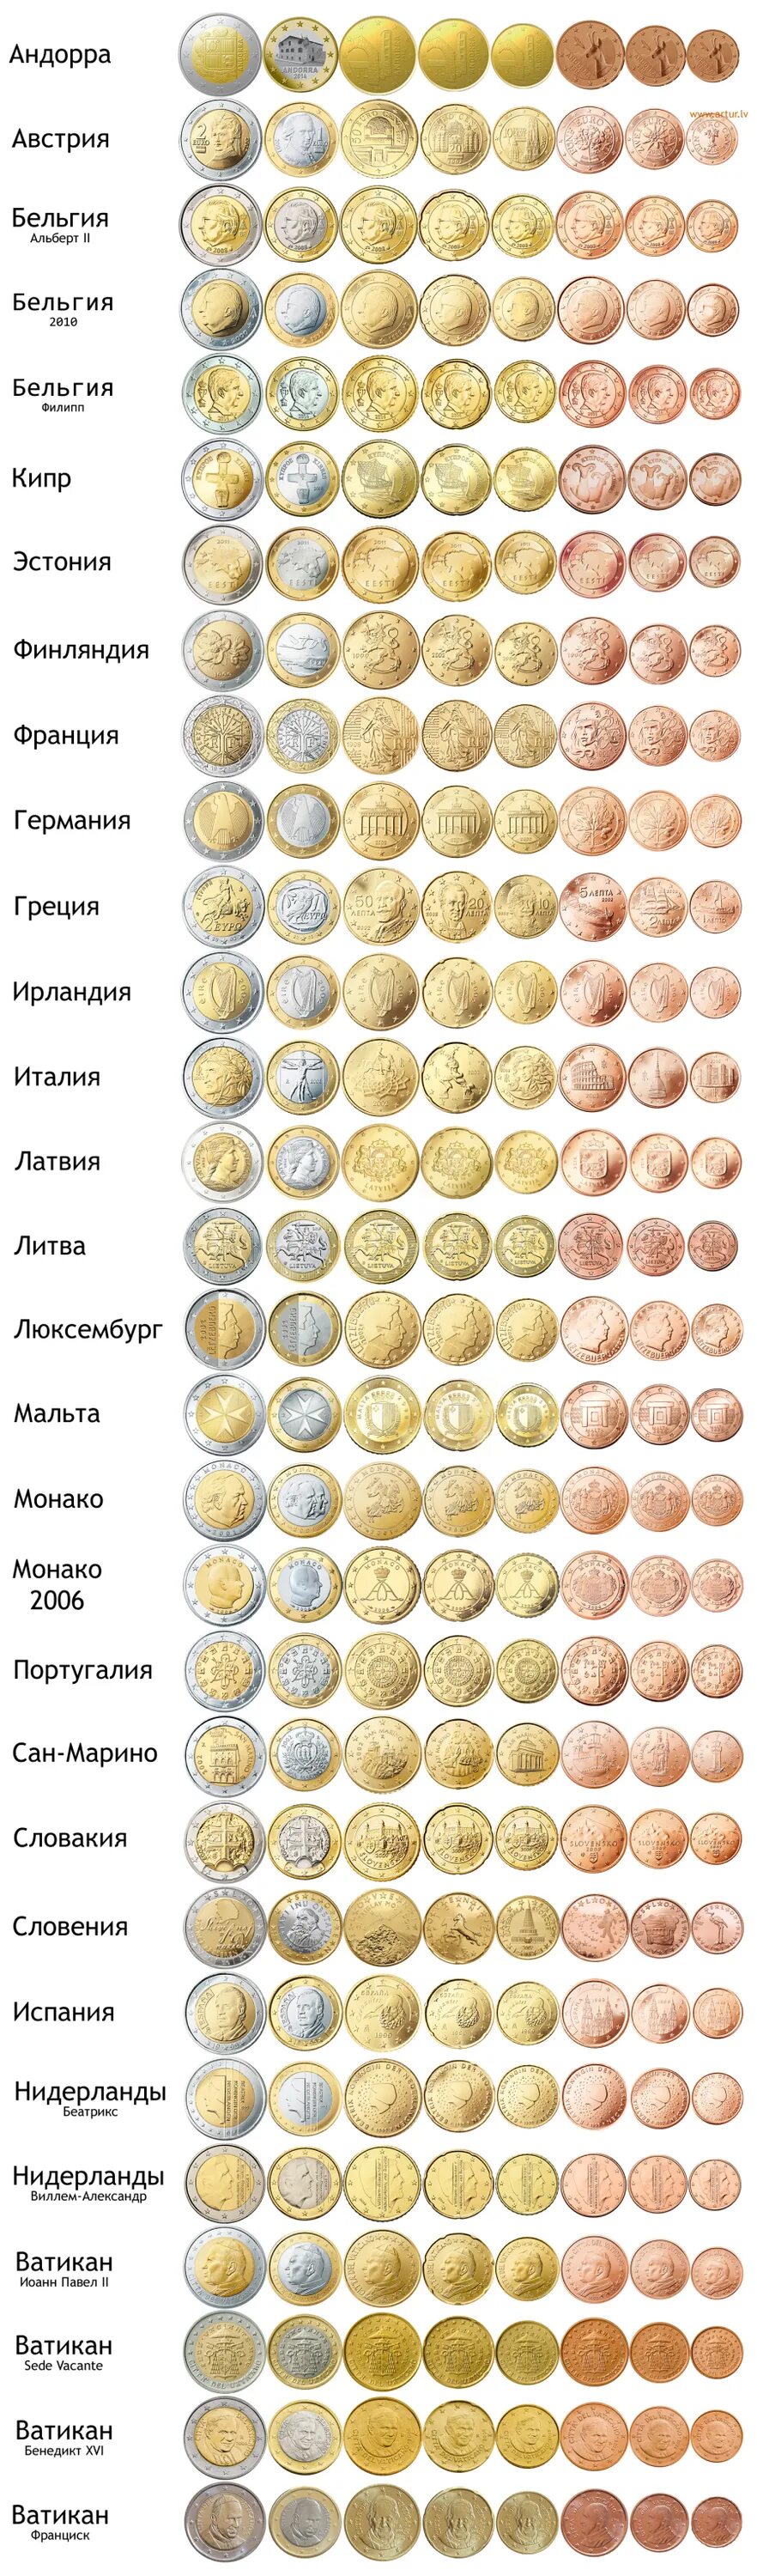 Сколько монет евро. Все монеты евро по странам. Монеты евро Аверс. Таблица евро монет по странам. Таблица регулярного чекана евро.